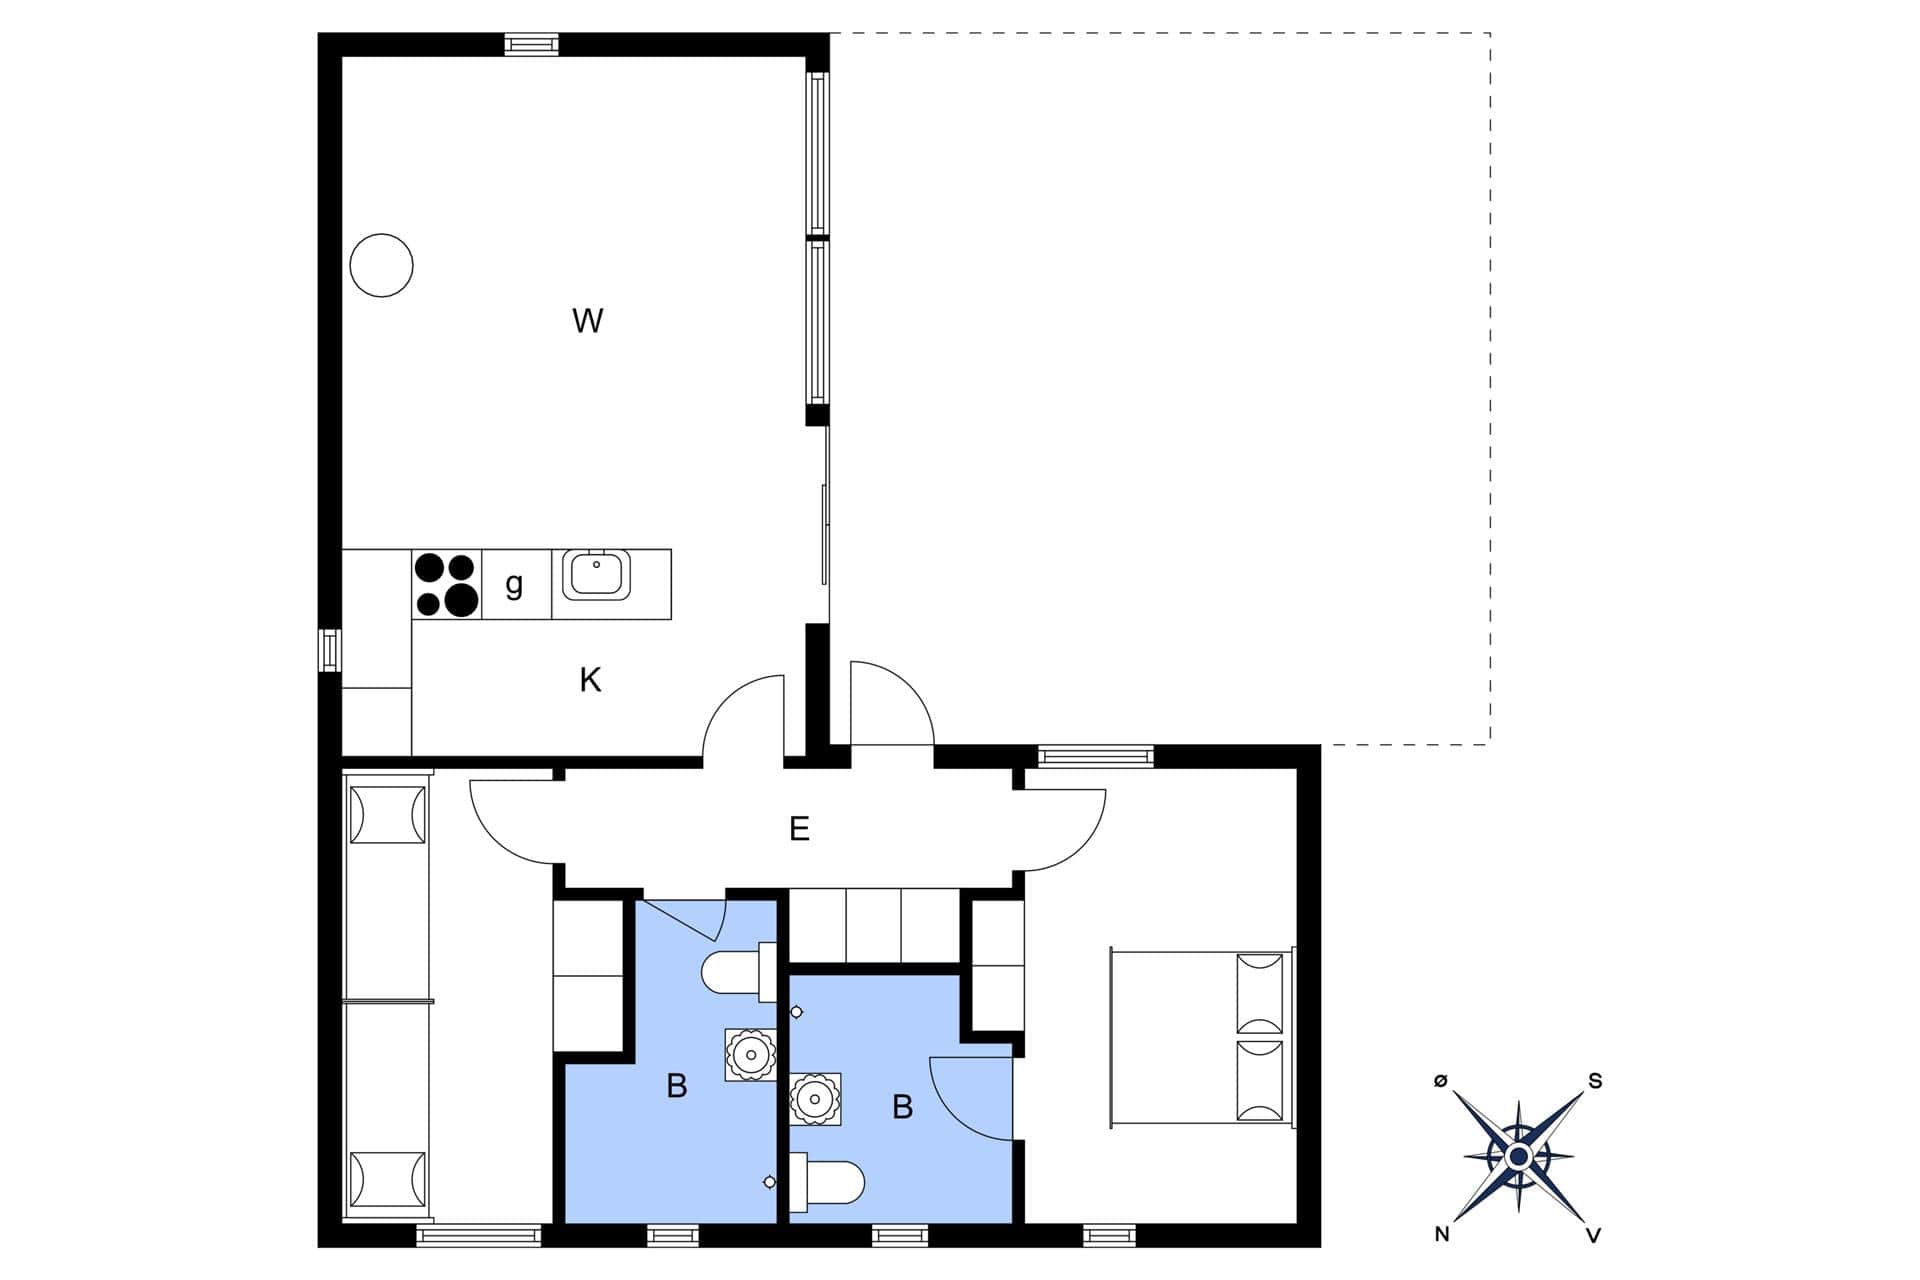 Interior 16-3 Holiday-home M642752, Oddevejen 8, DK - 5500 Middelfart